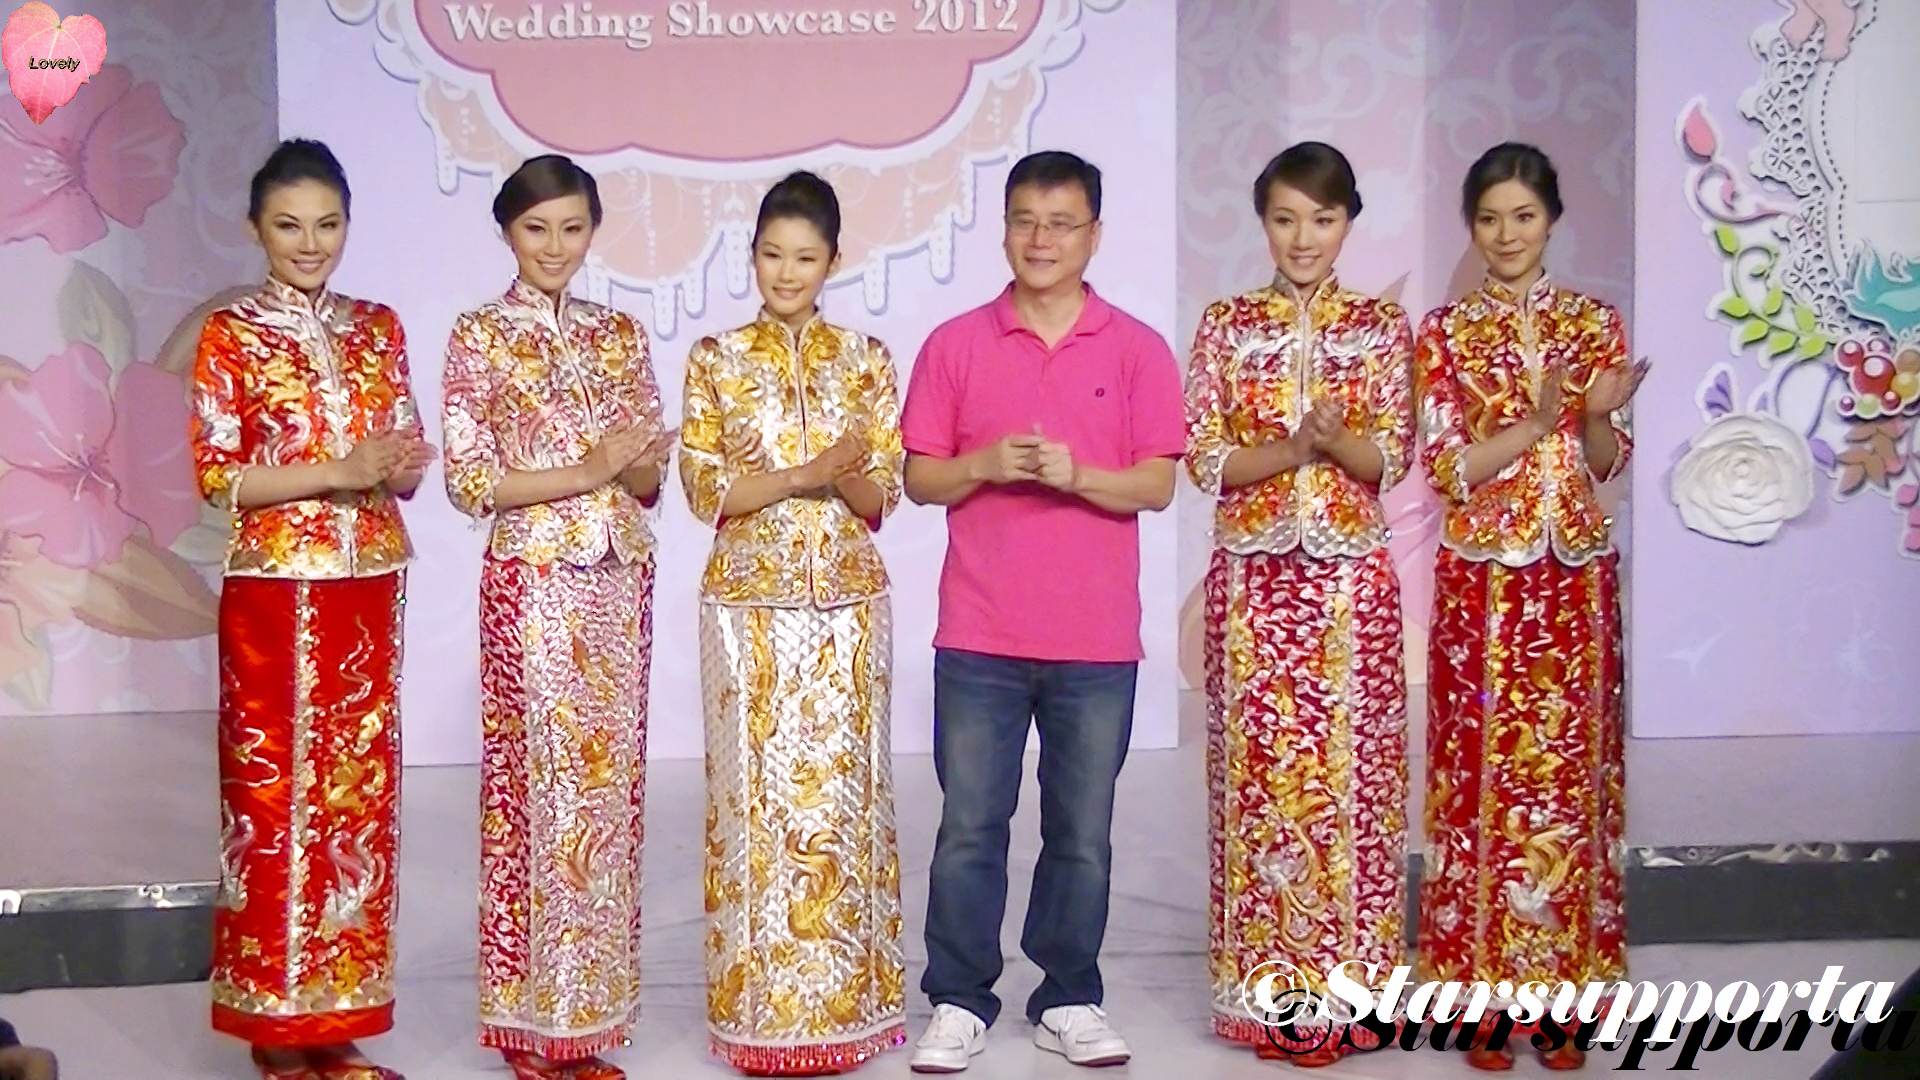 20120922 10th Hong Kong Wedding Showcase 2012 - 鴻運繡莊: 癸巳年裙褂預演 @ 香港Emax (video)